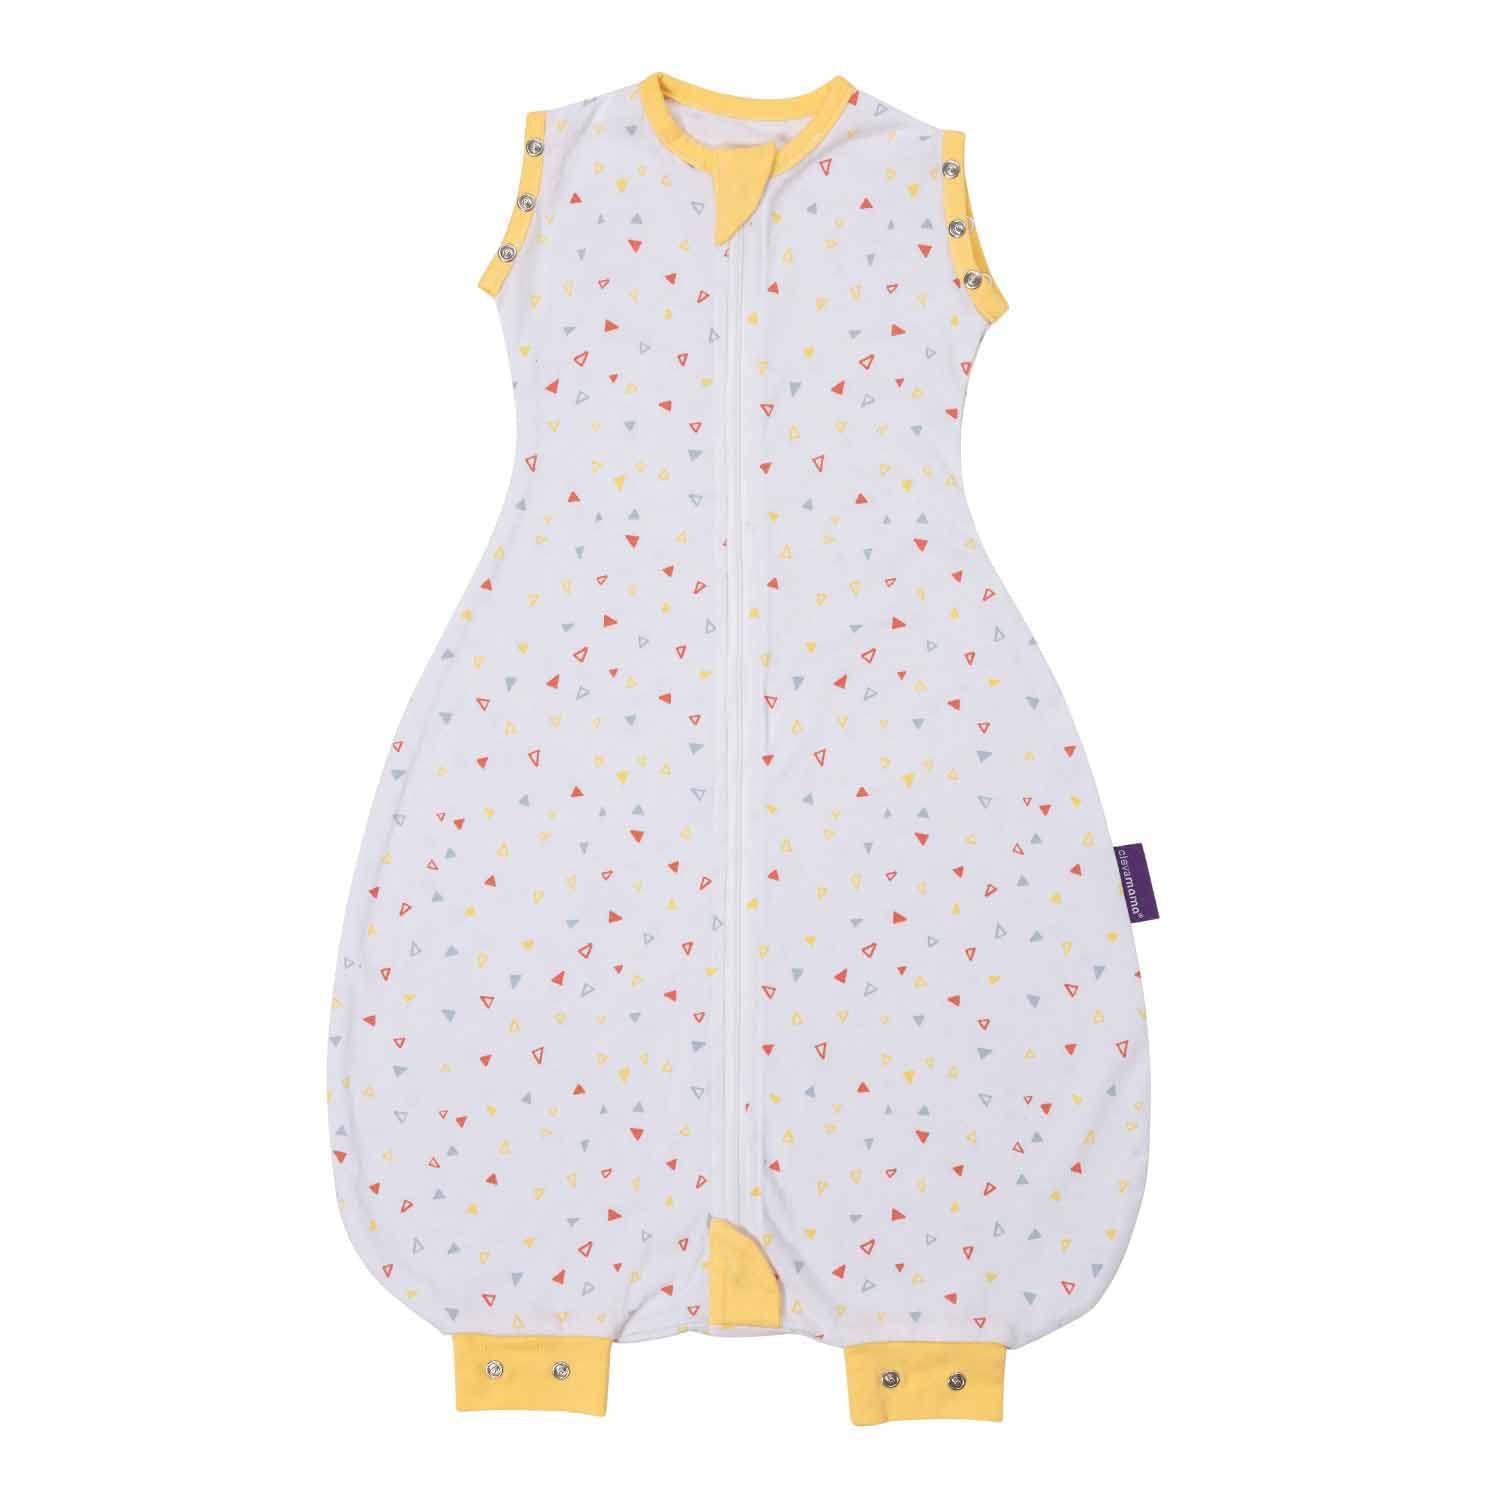 ClevaMama Nite Nite Baby Strampler - Strampelanzug für Babys und Neugeborene - 1.0 Tog - (0-9 Monate), gelb